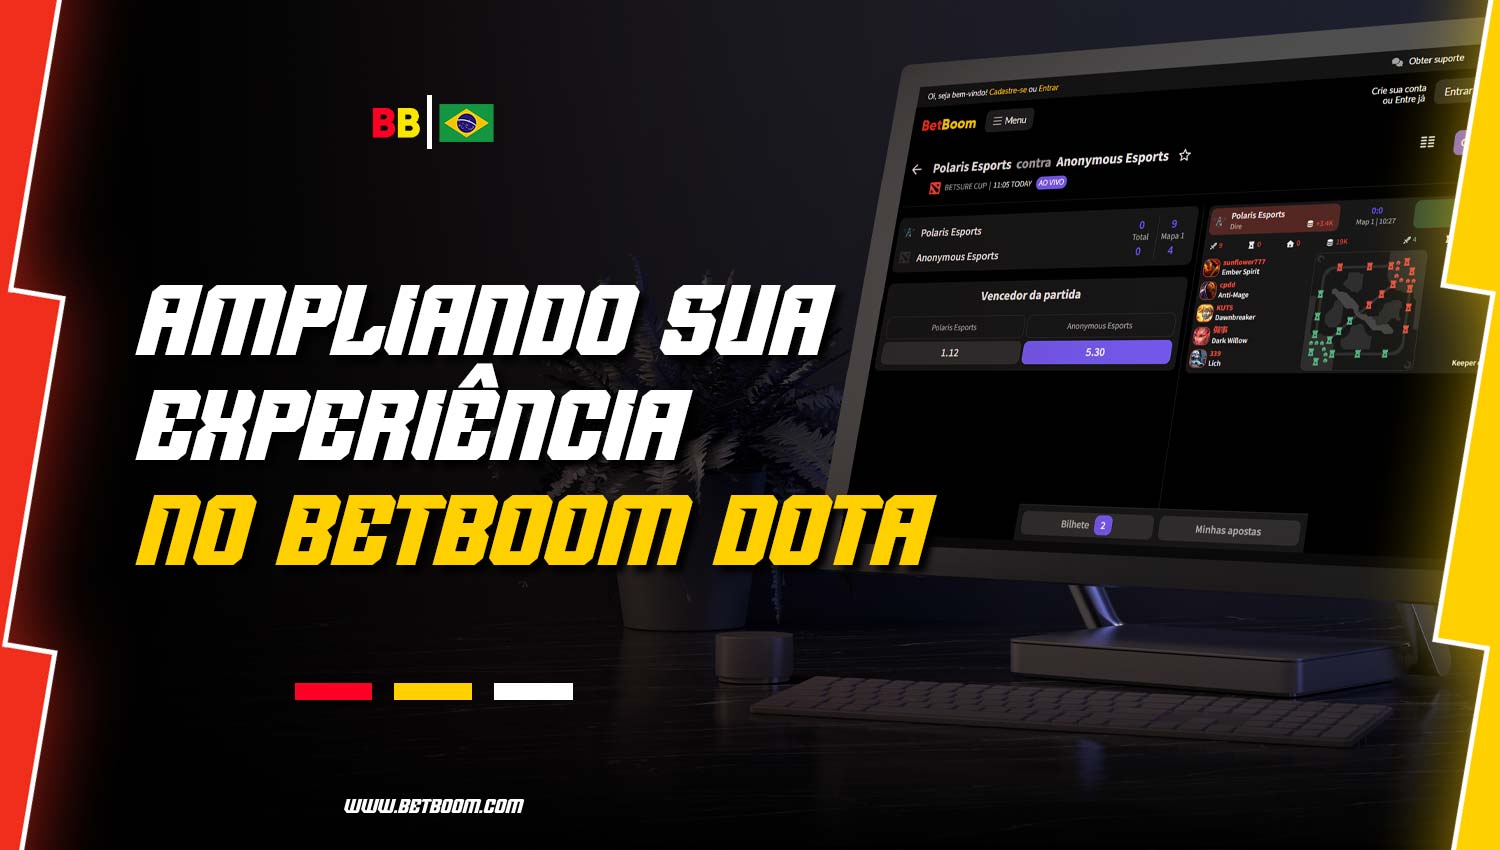 BetBoom Dota oferece aos apostadores novos mercados e opções.